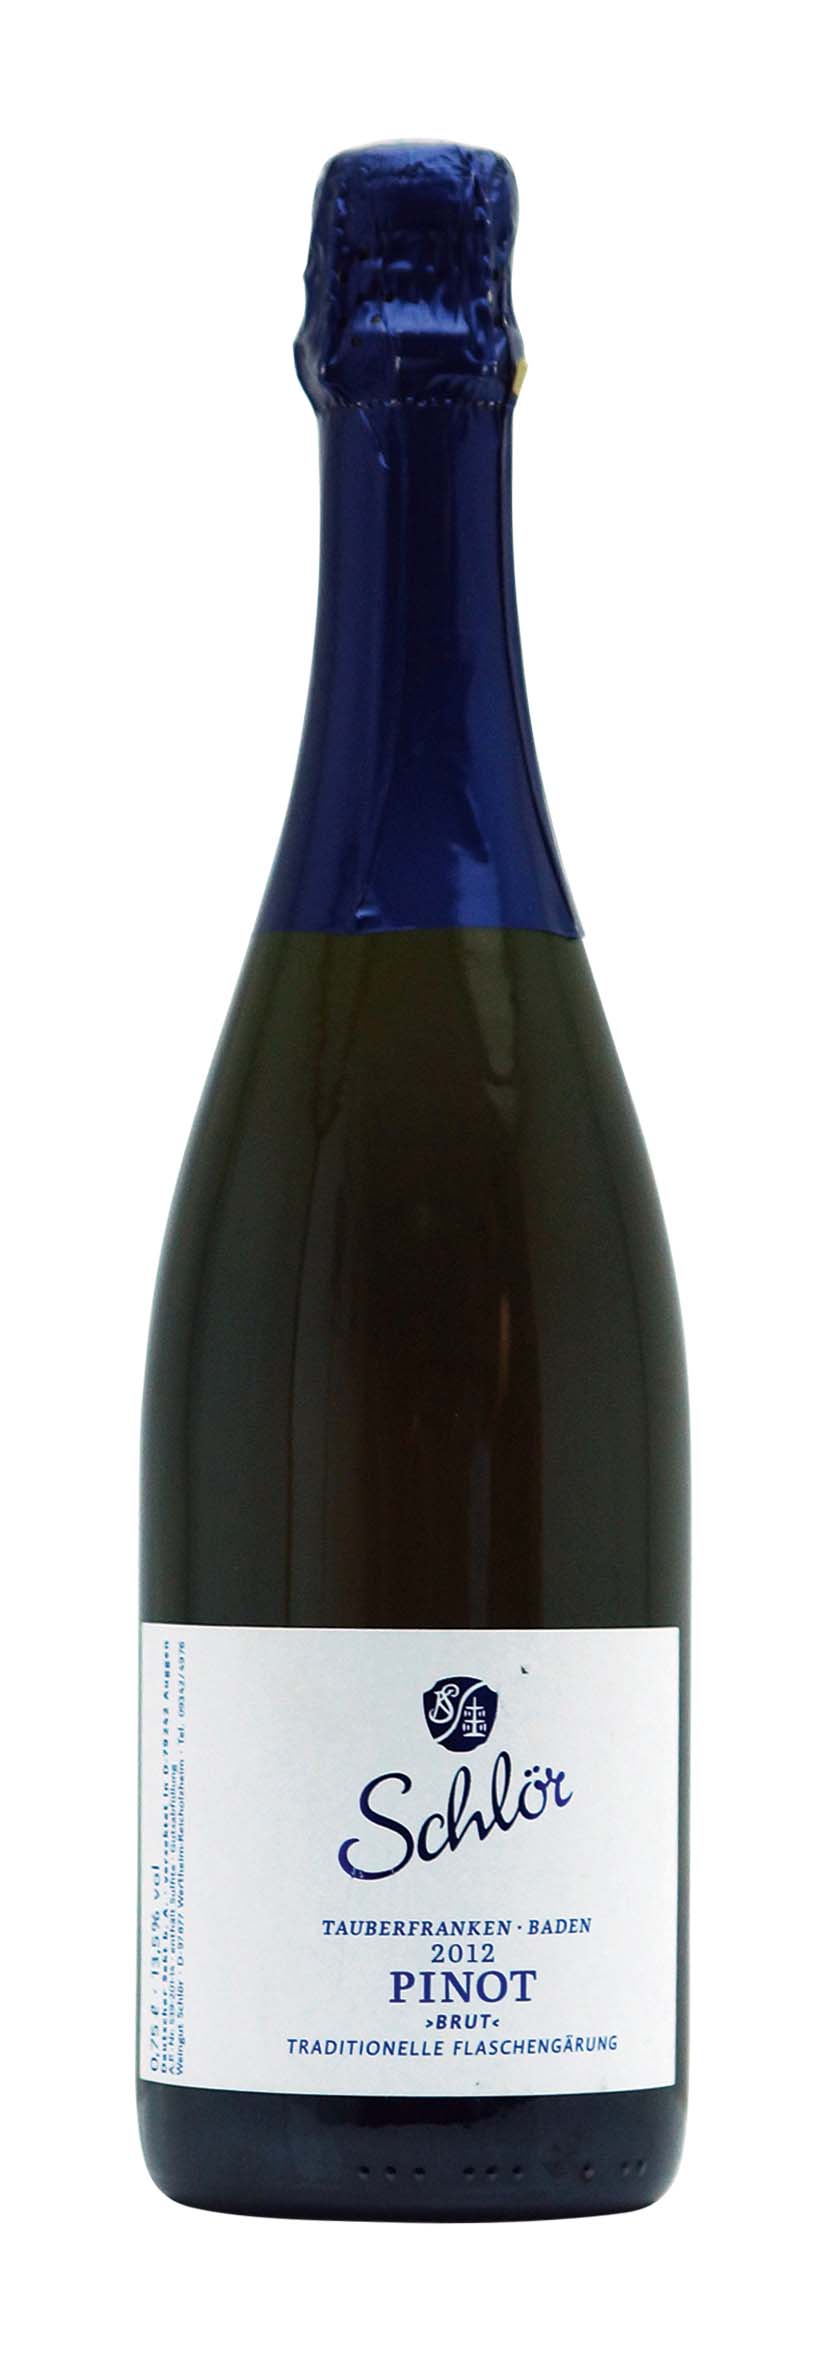 Baden Pinot - Traditionelle Flaschengärung 2012